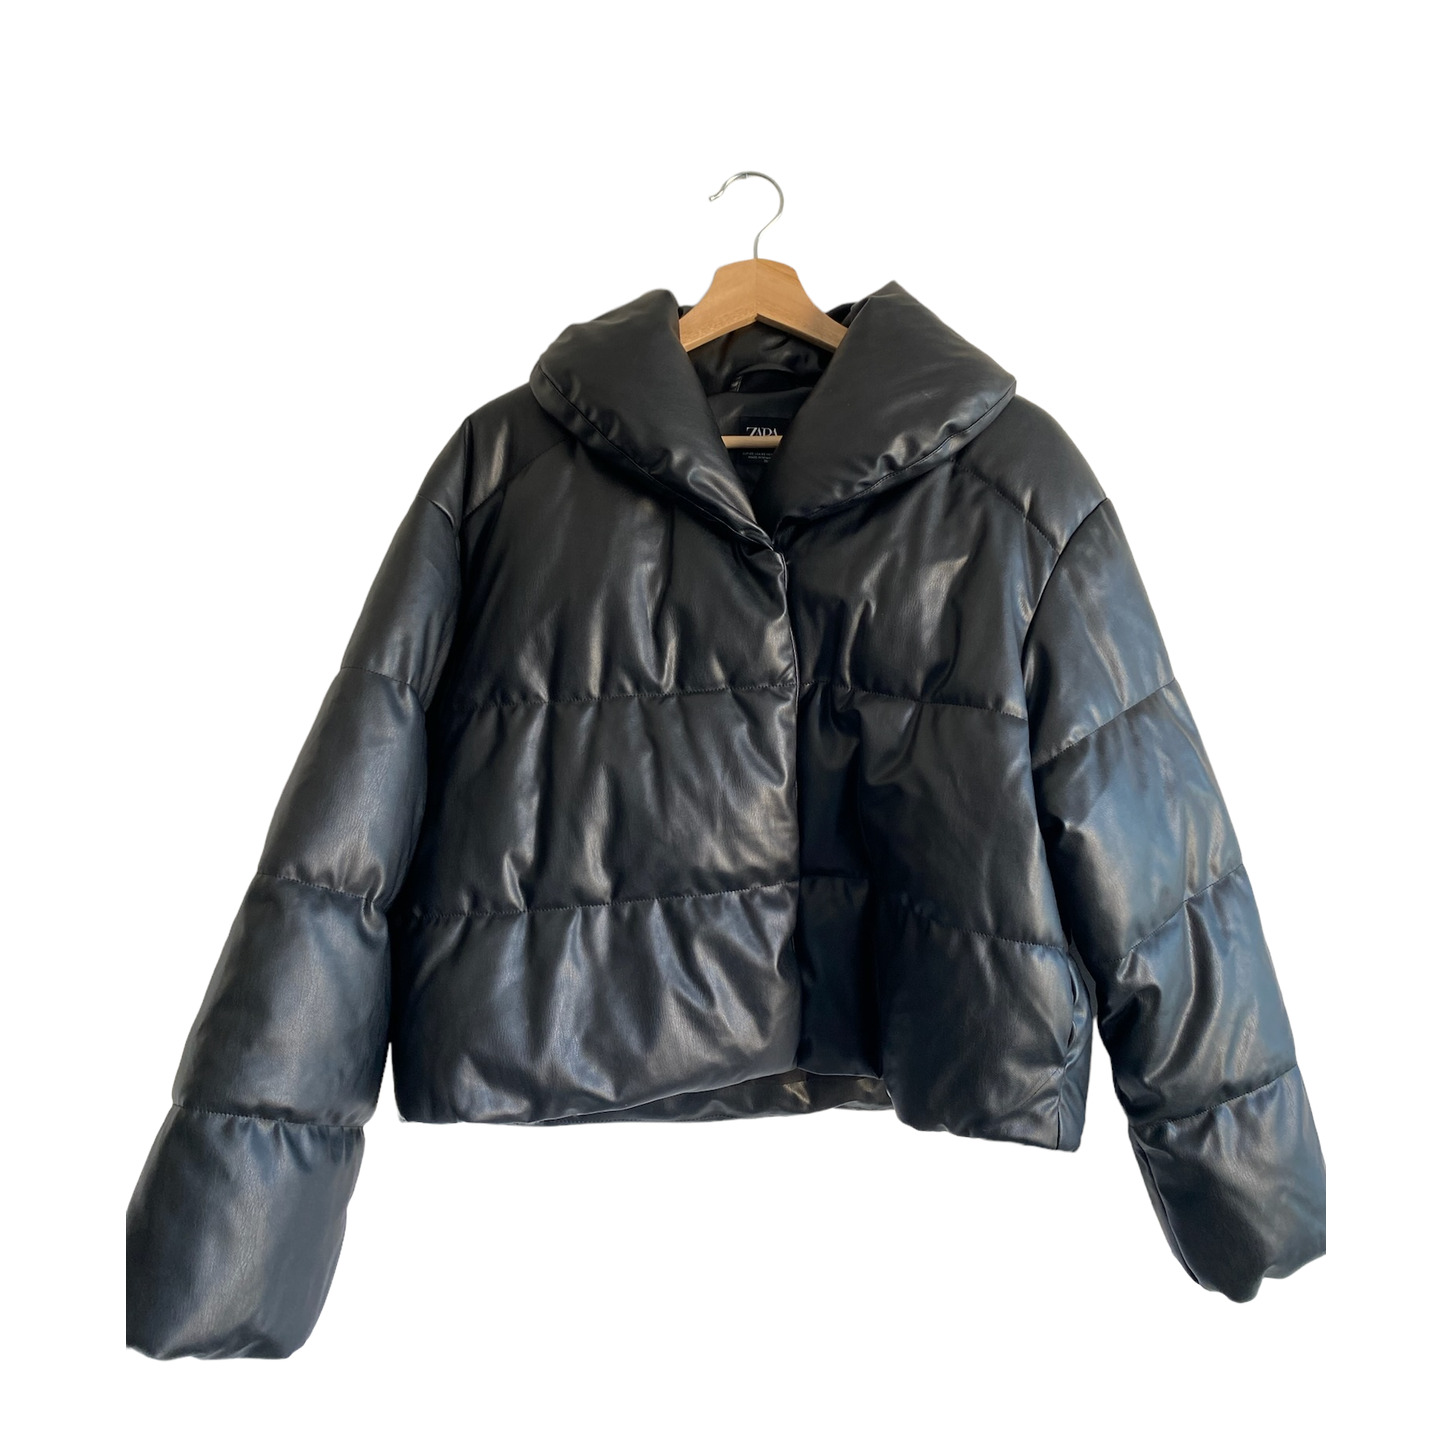 Zara Black Puffer Jacket - image 1